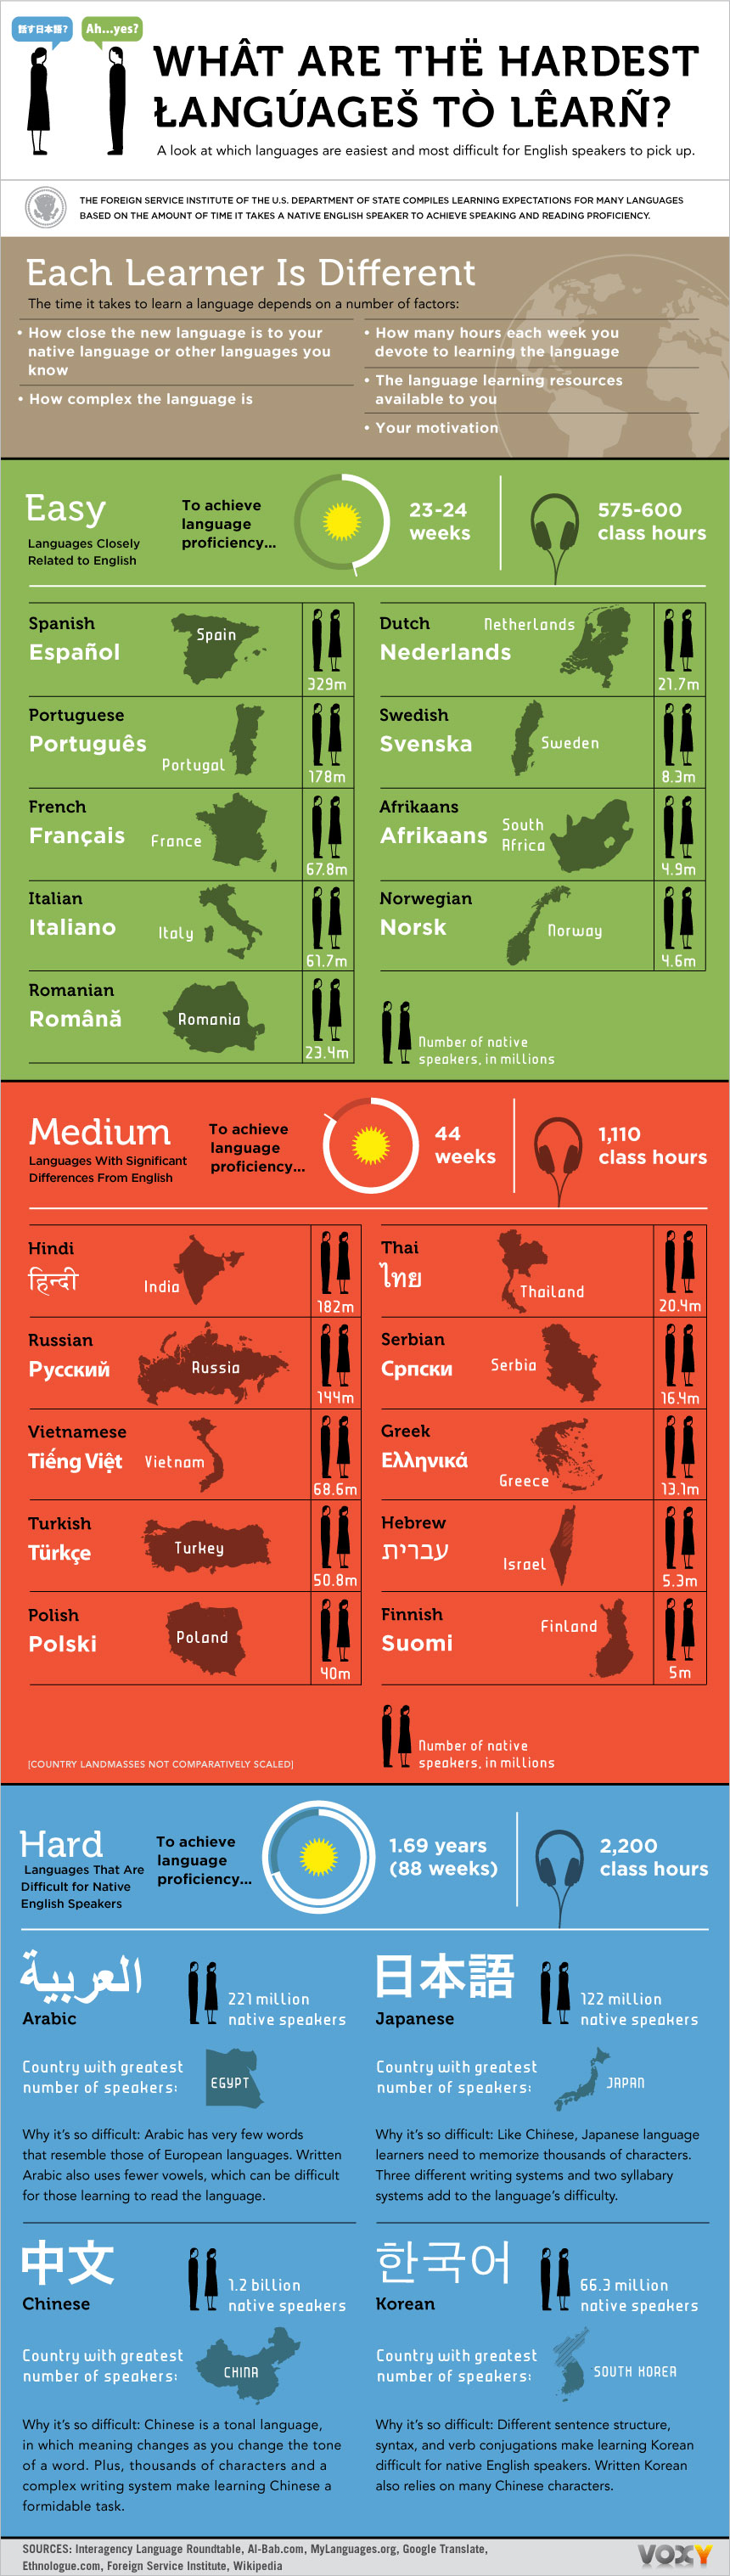 En zor konuulan dil hangisi?